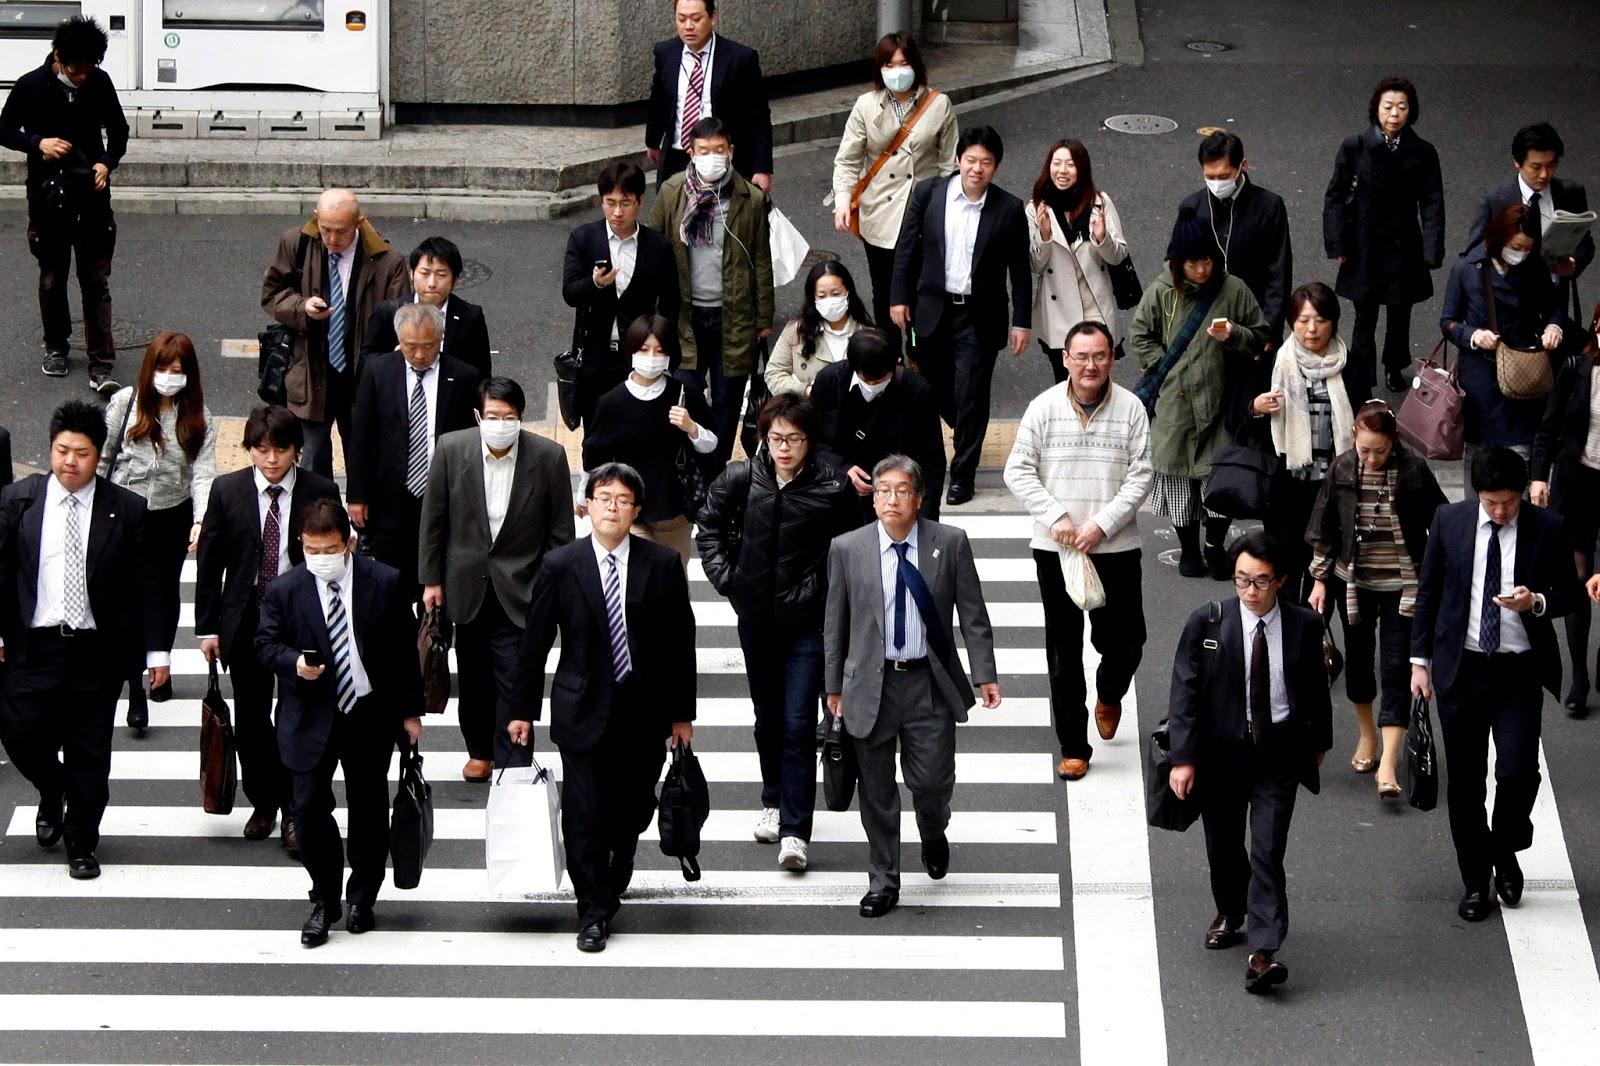 ارتفاع معدل الوفيات في اليابان بسبب الإجهاد في العمل